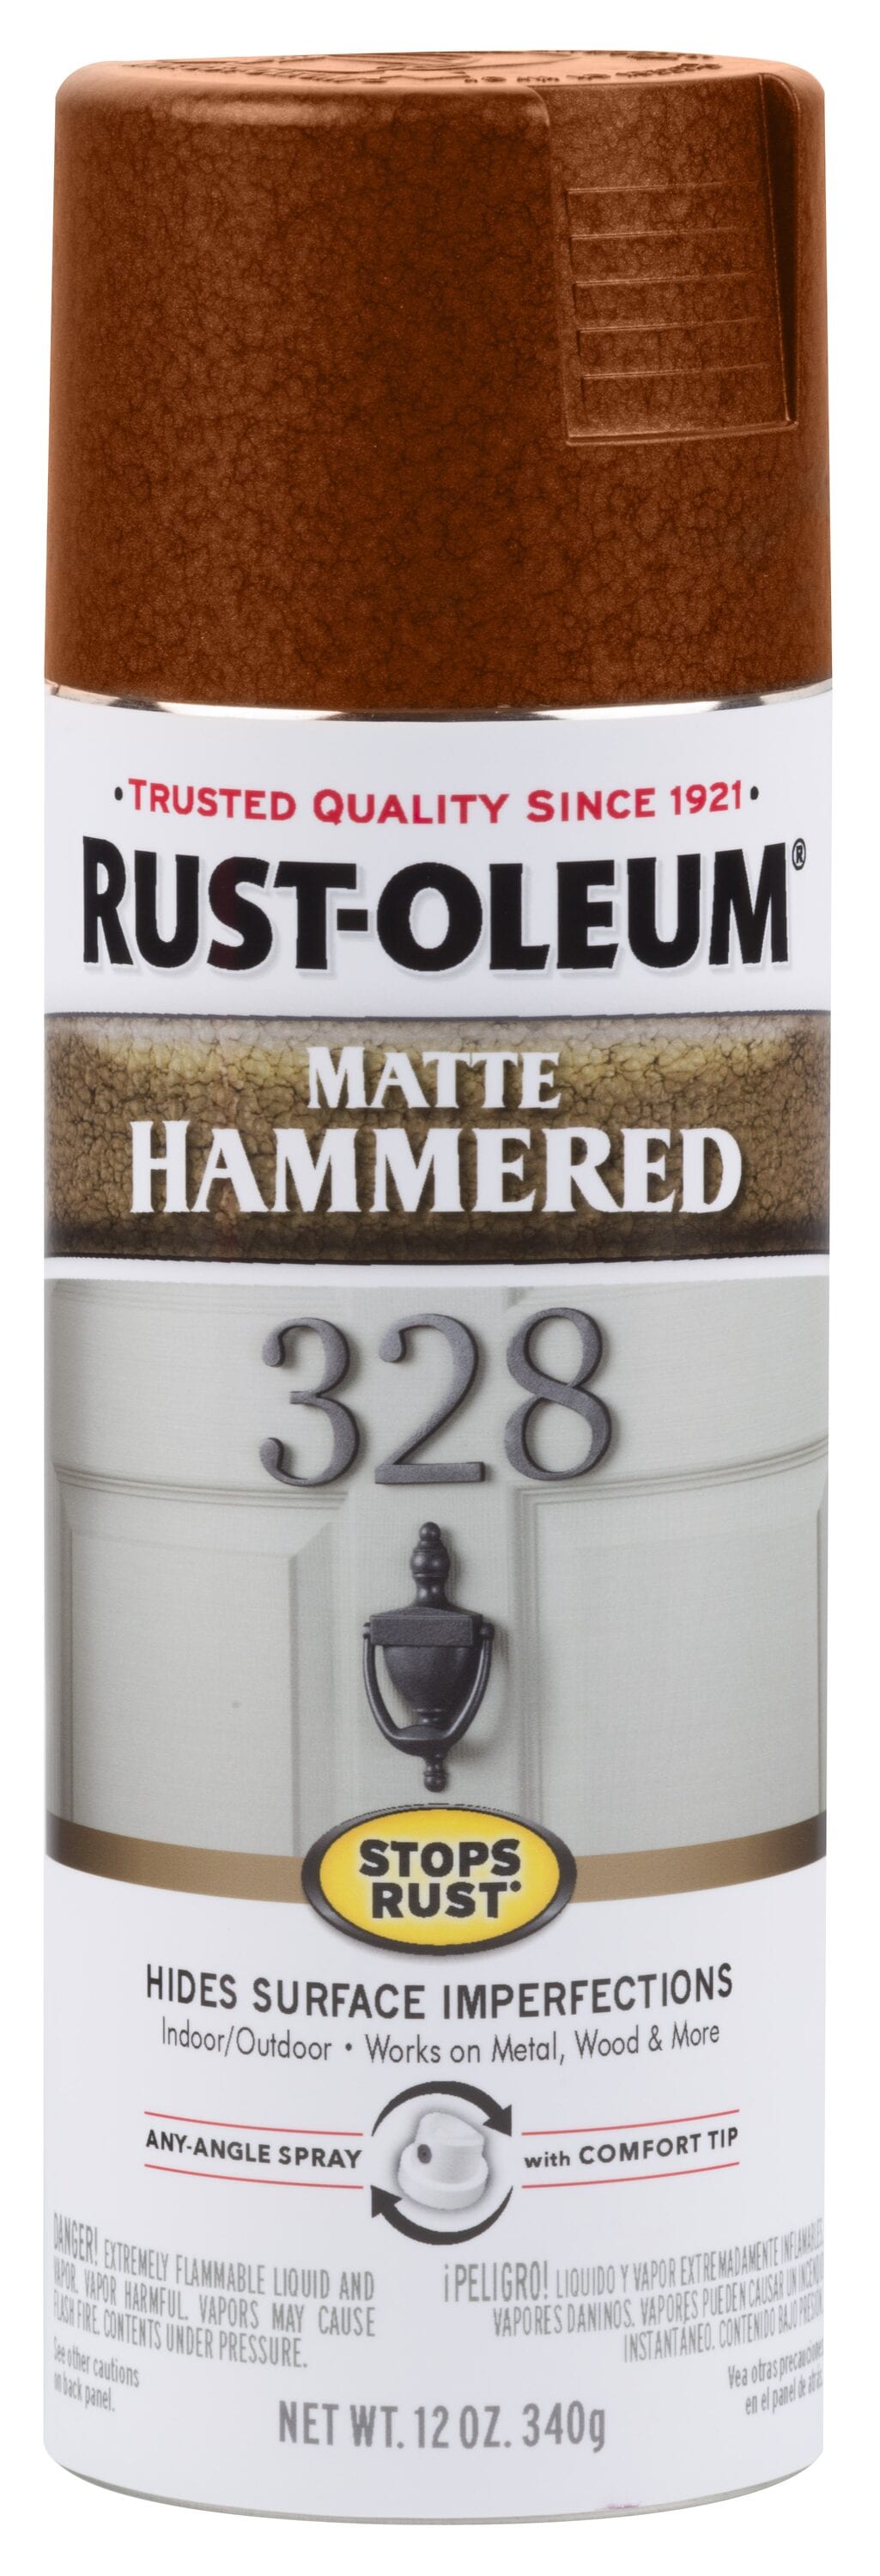 Rust-oleum Metallic Multi-purpose Spray Paint Gold Chrome Copper